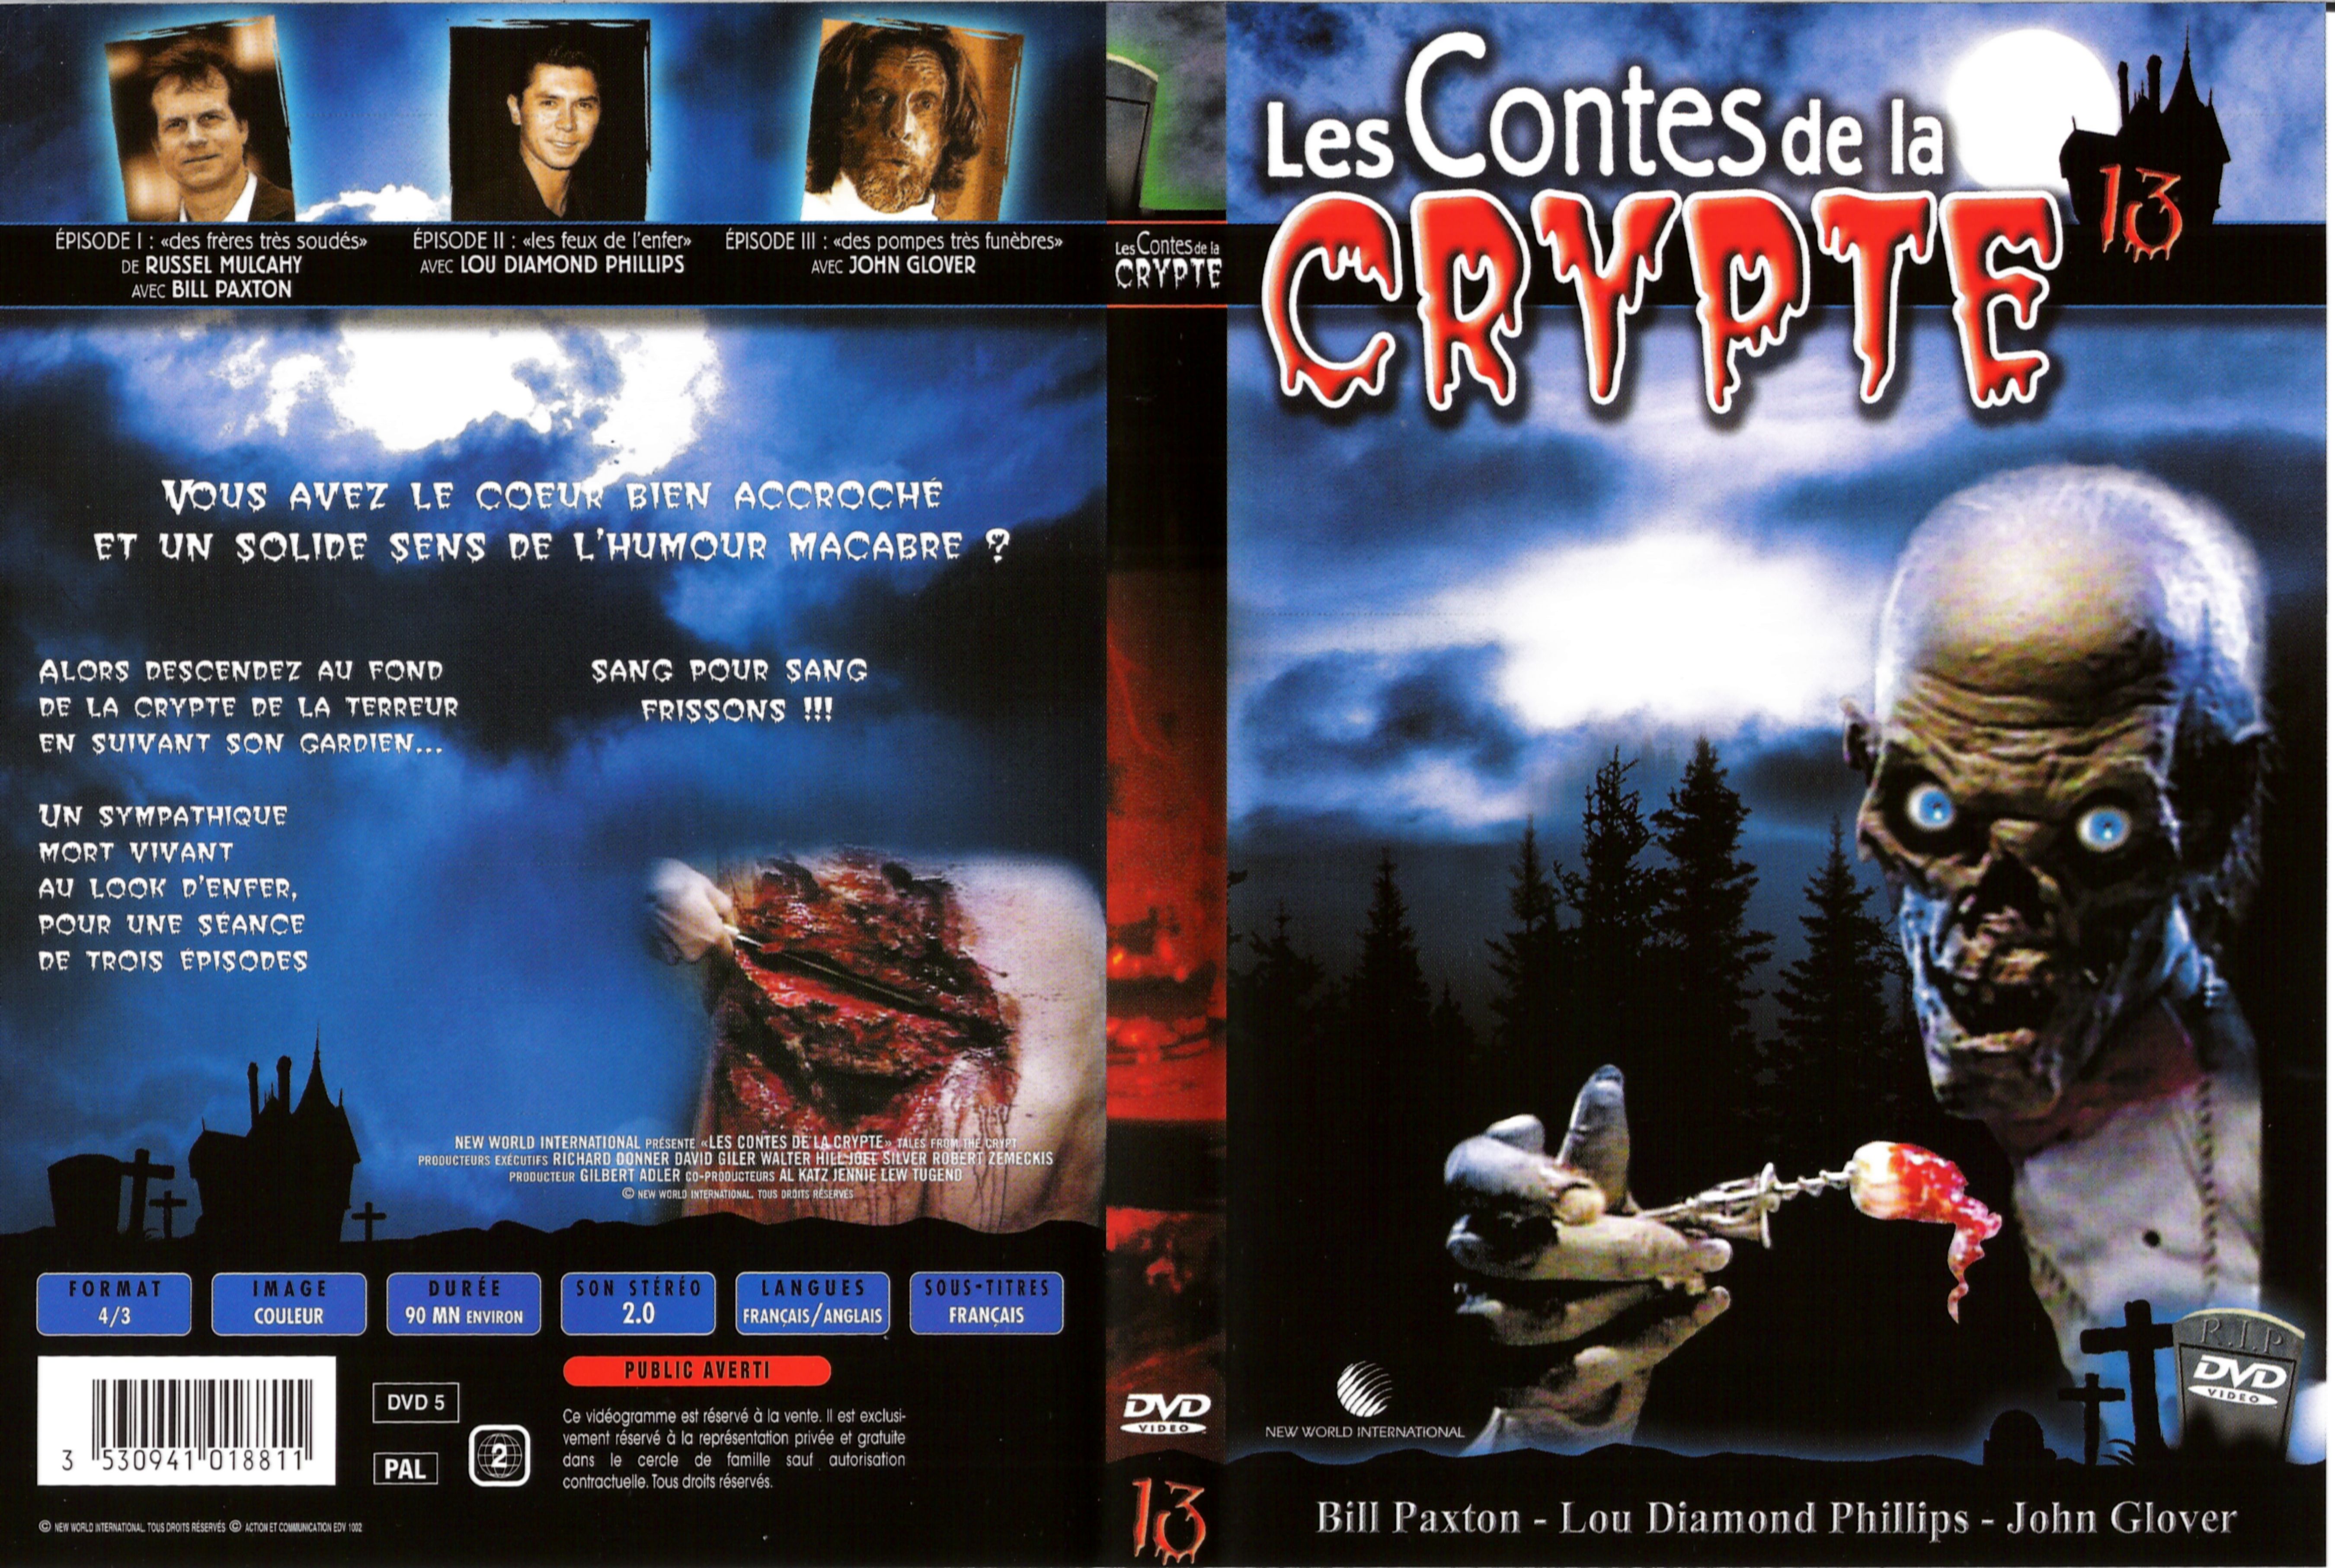 Jaquette DVD Les contes de la crypte vol 13